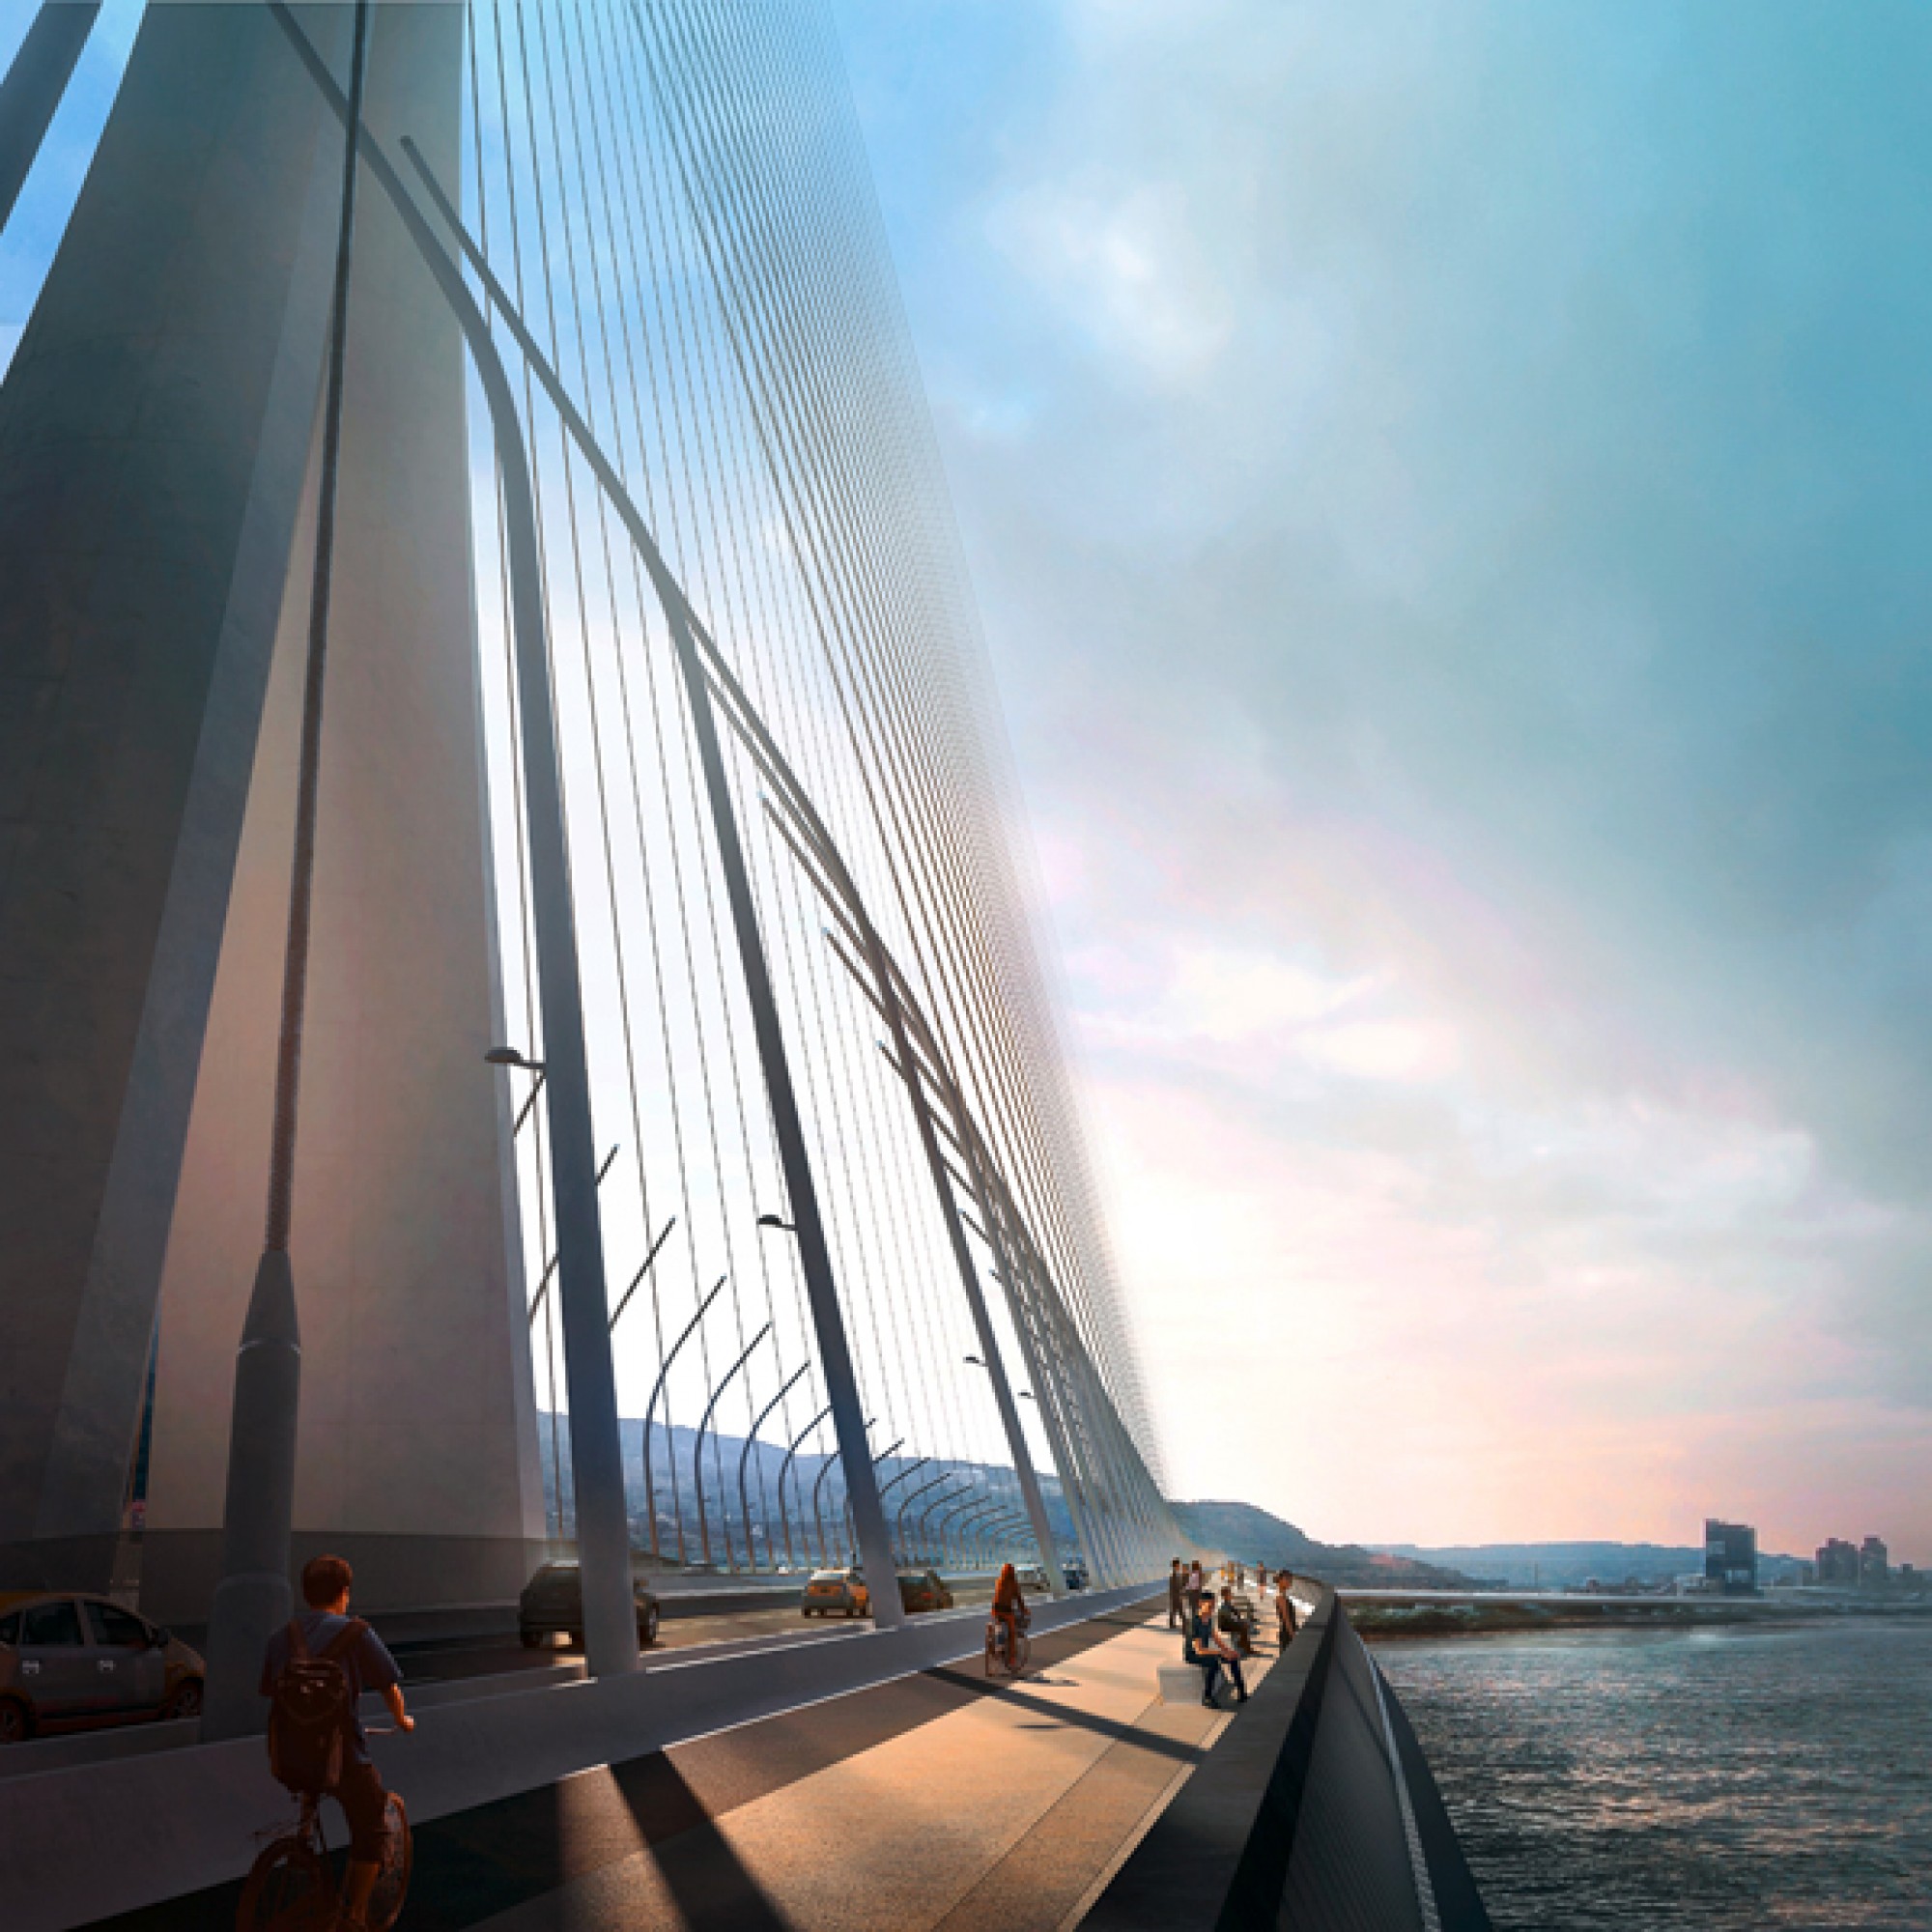 Die Brücke wird für Fussgänger, Autos und für die Bahn errichtet. (PD)